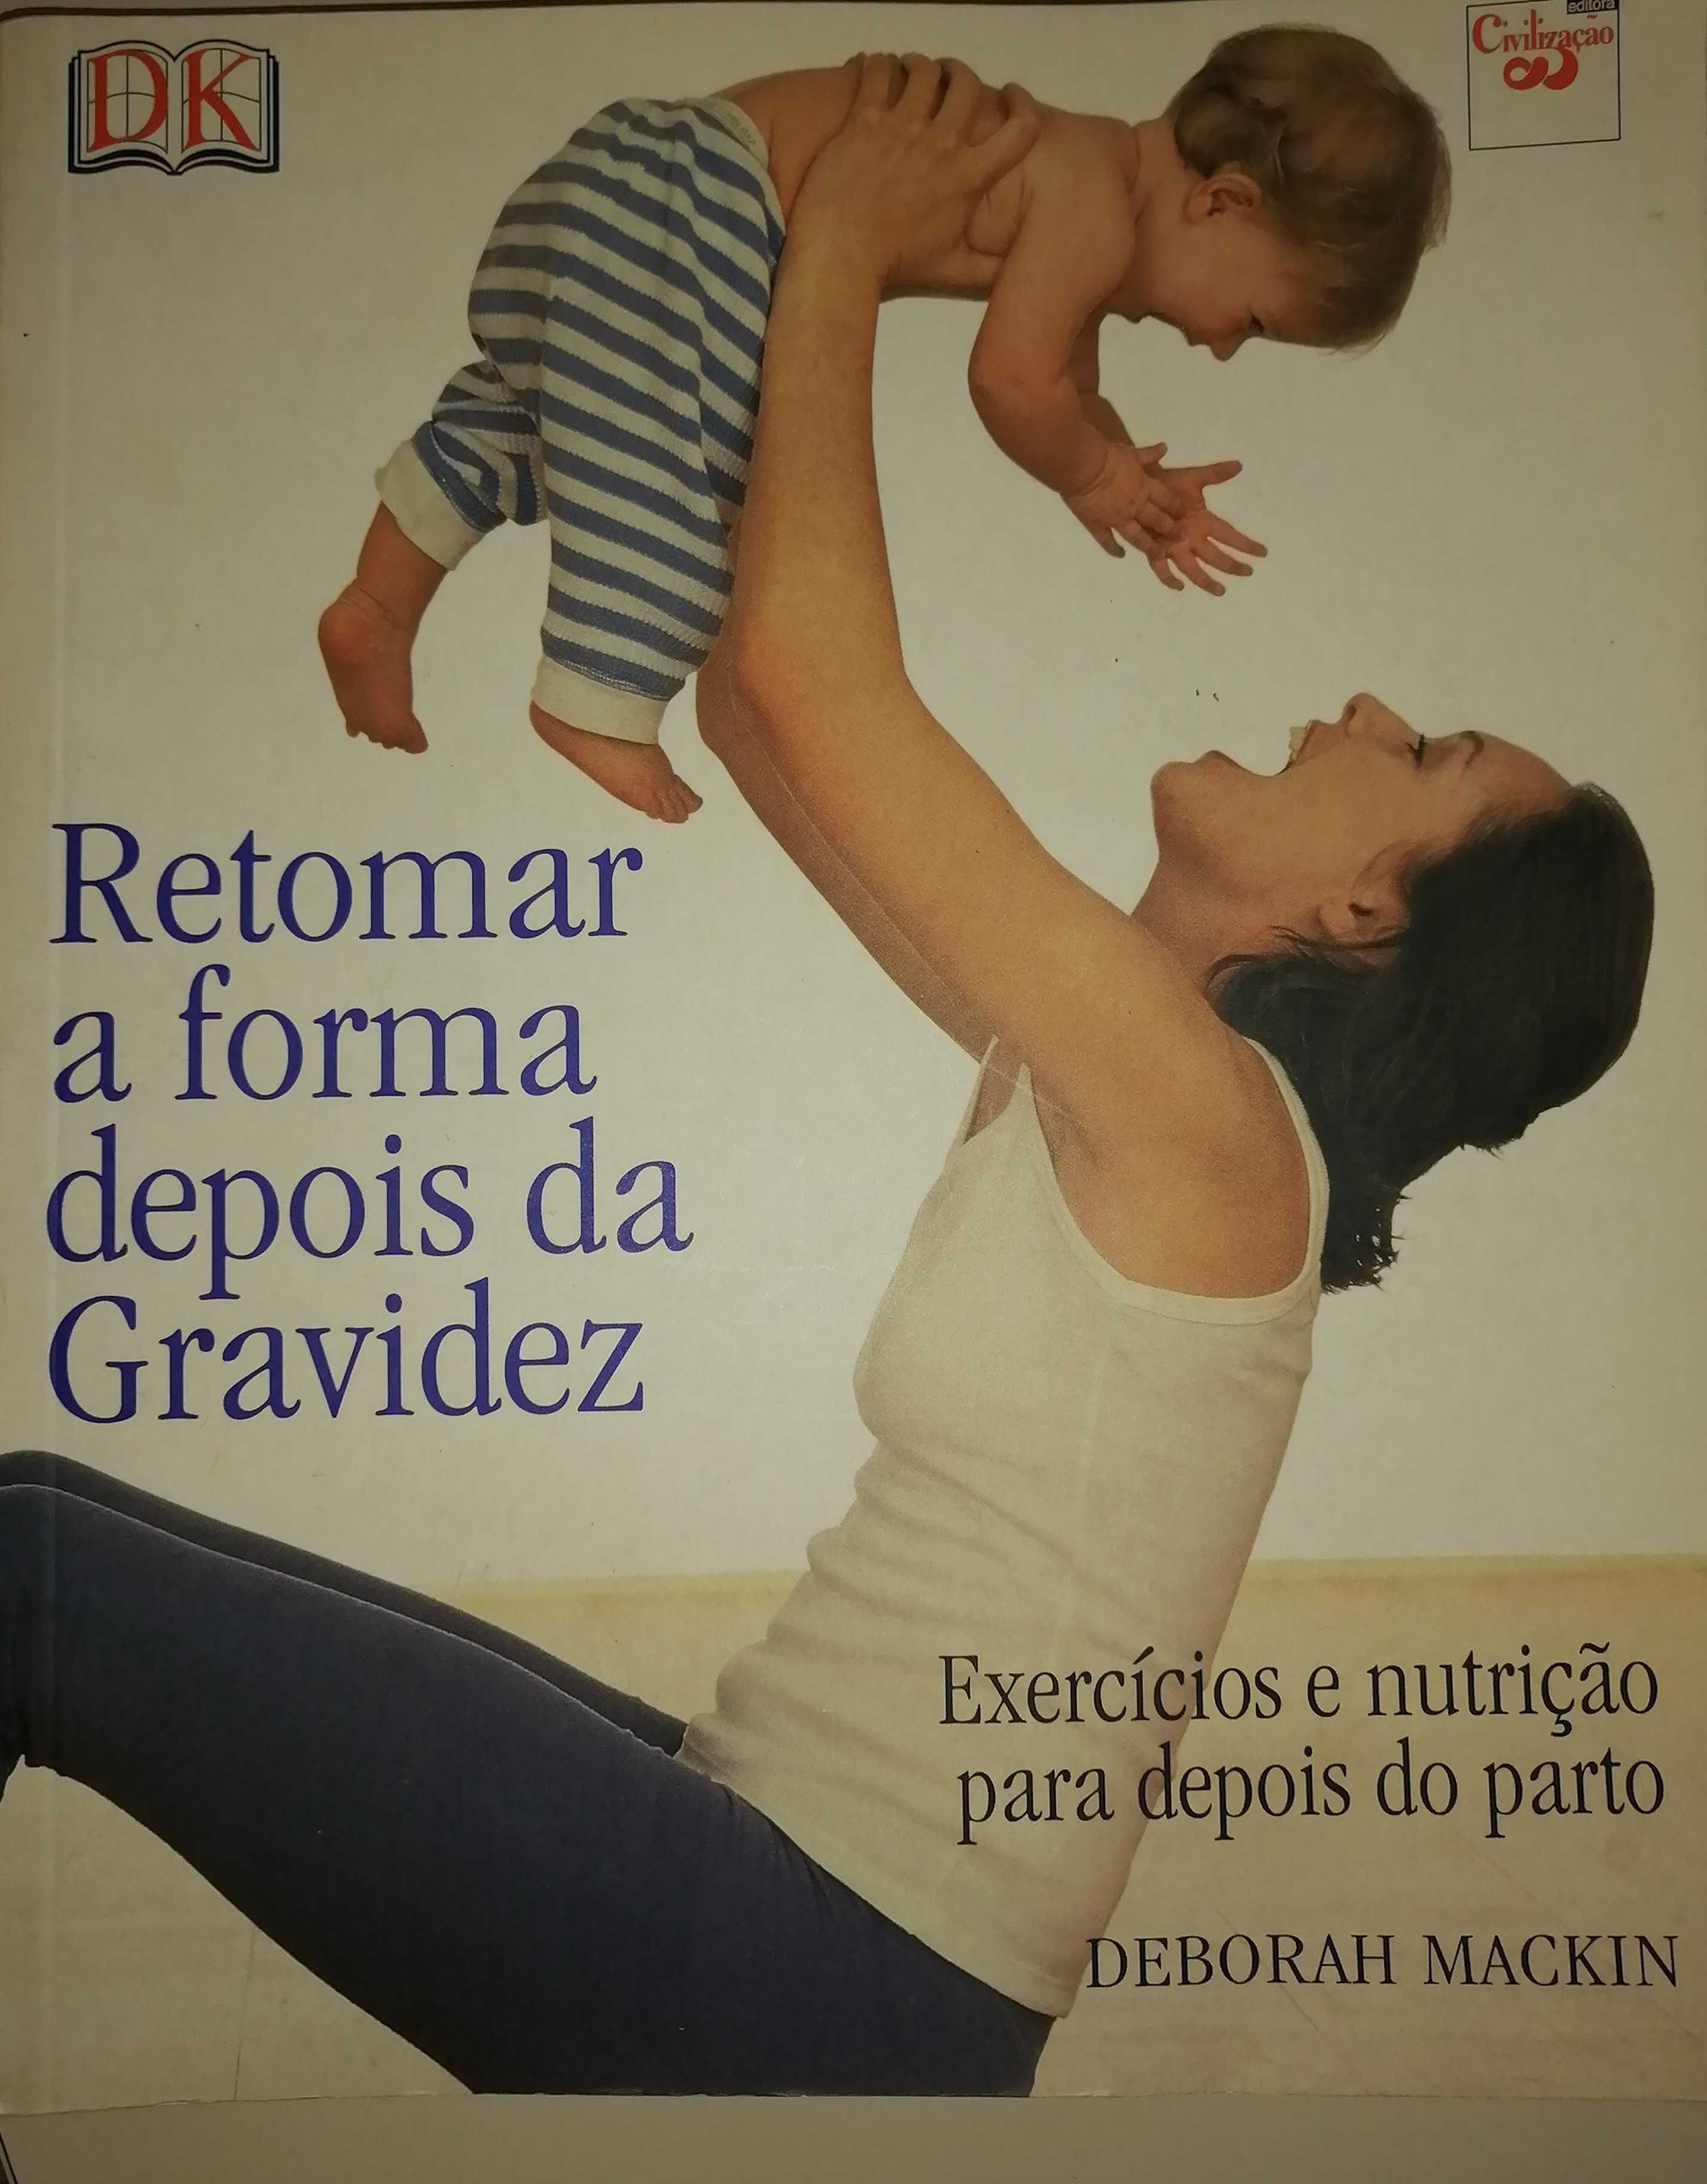 Livro "Retomar a forma depois da gravidez"